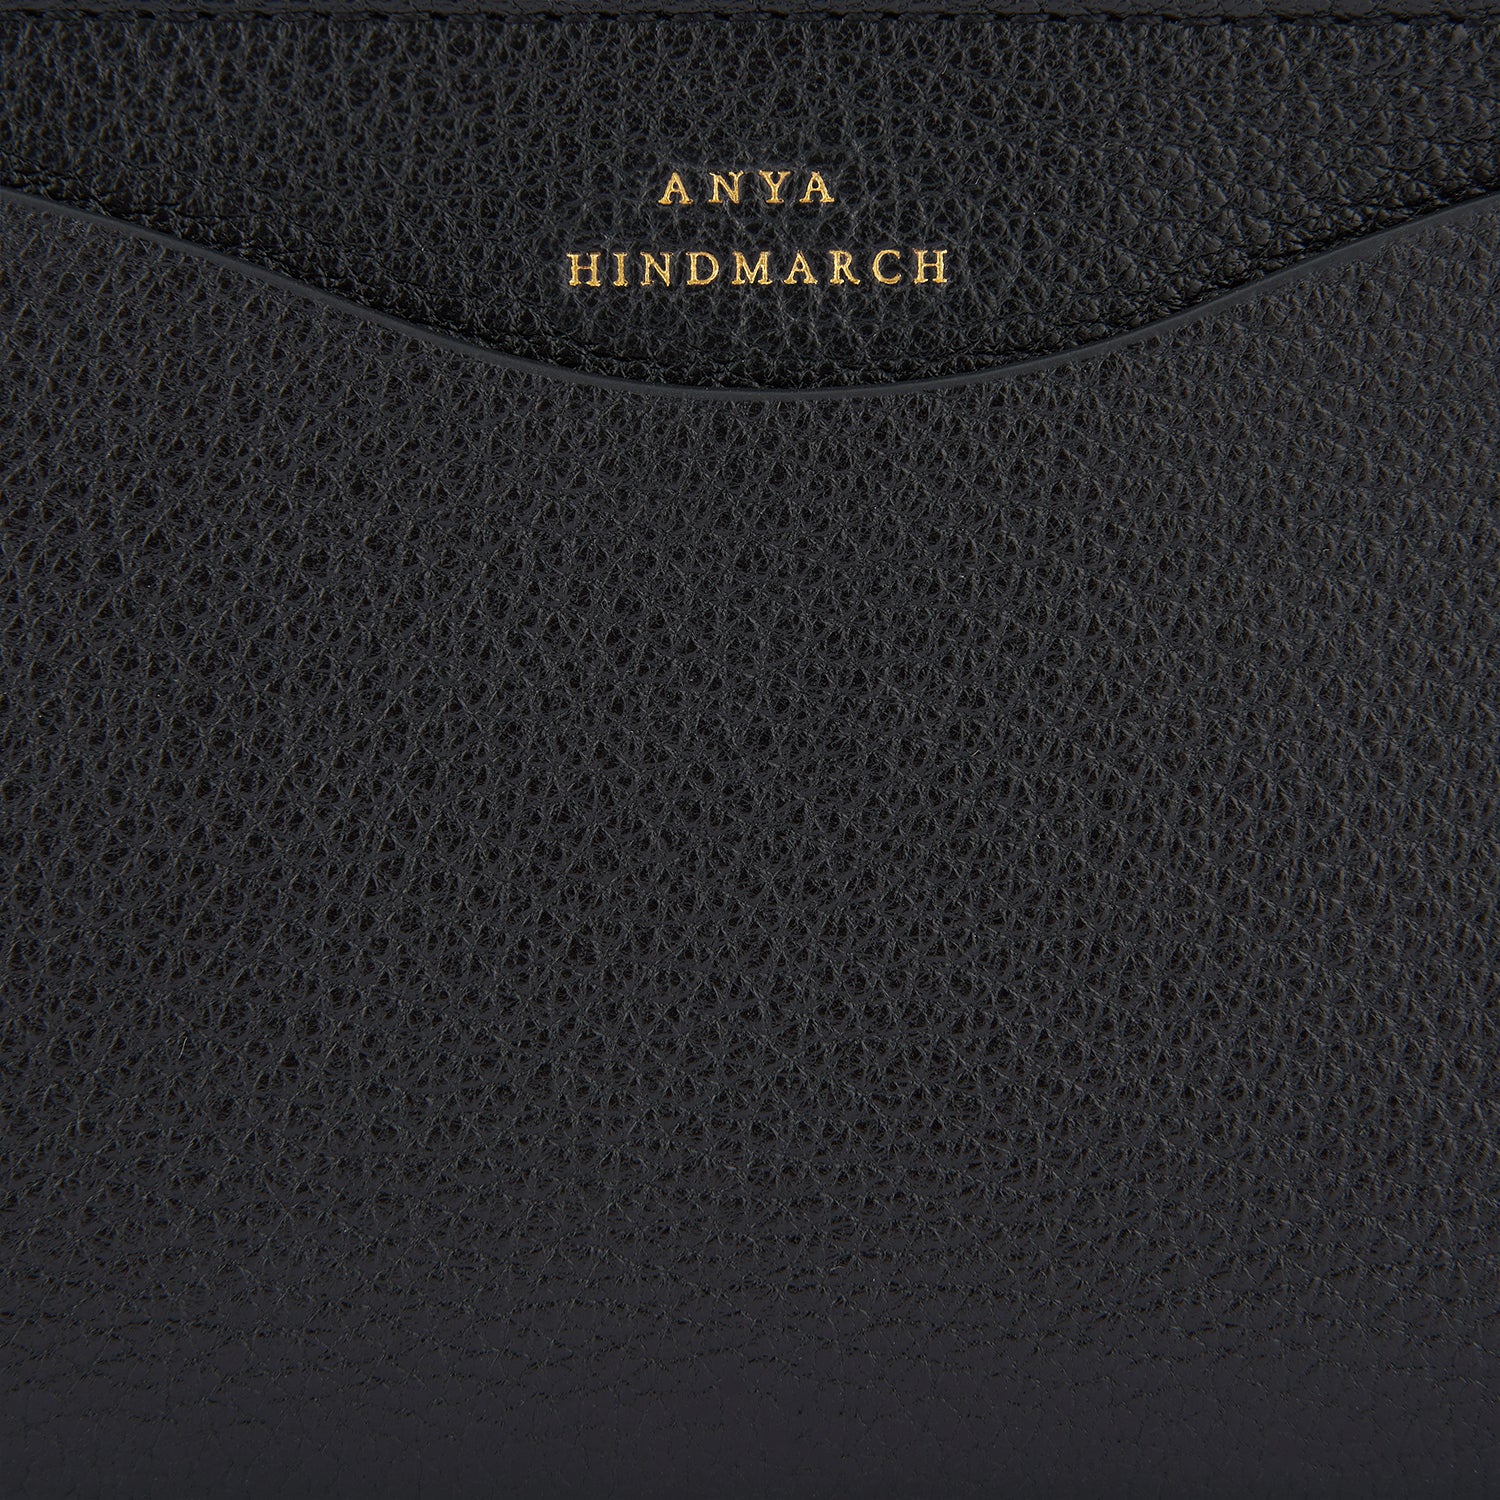 Peeping Eyes Large Double Zip Wallet -

                  
                    Capra Leather in Black -
                  

                  Anya Hindmarch UK
